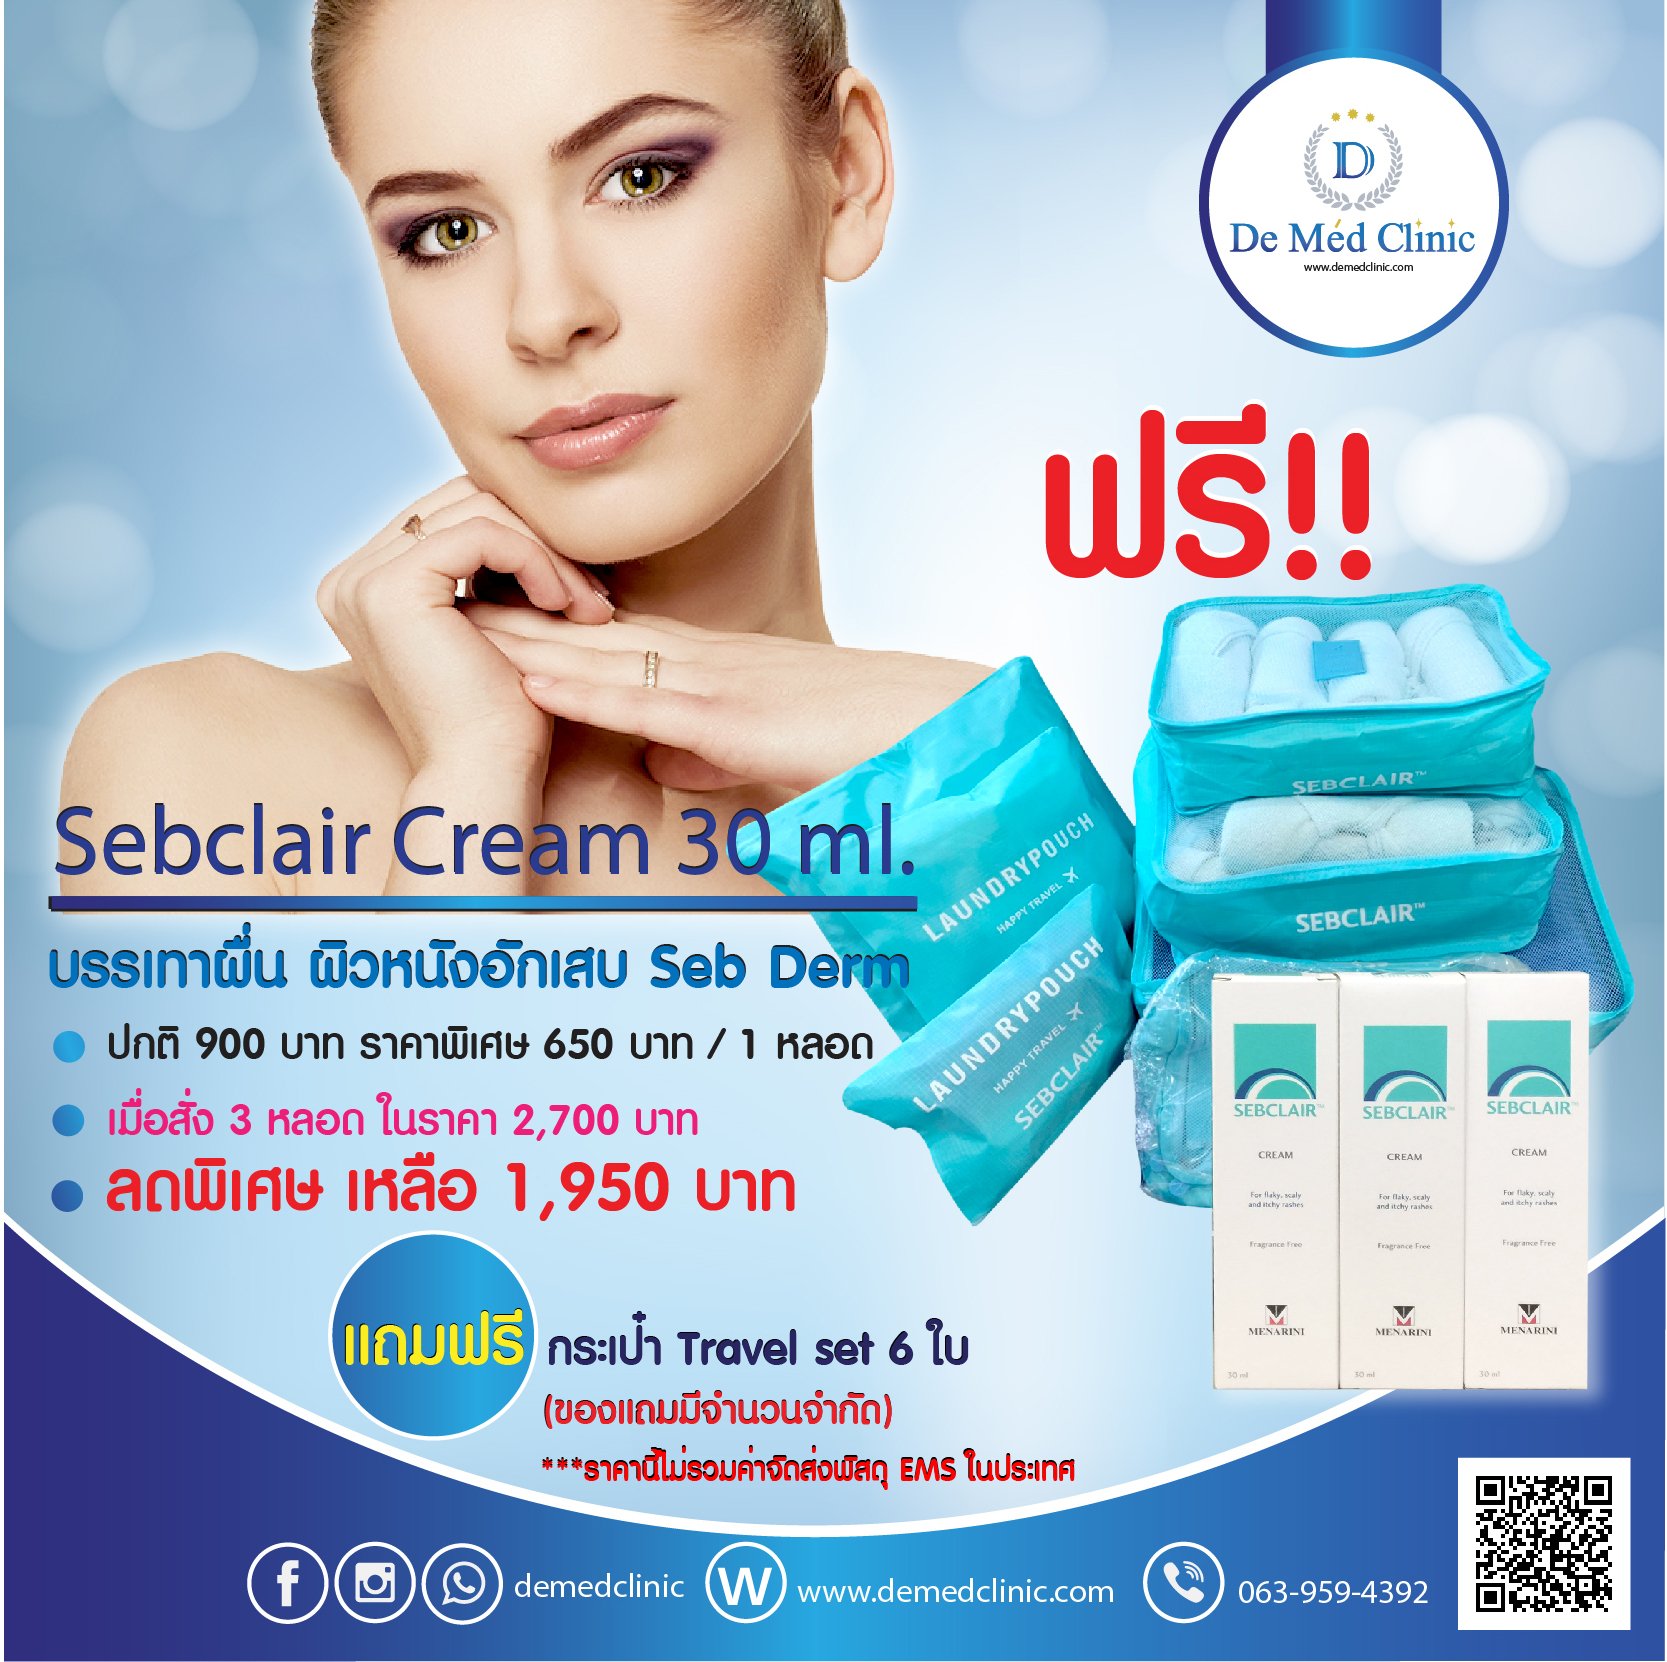 Sebclair Cream 30 ml.(บรรเทาผื่น ผิวหนังอักเสบ Seb Derm ) สั่งครีม 3 หลอด ถมฟรีกระเป๋า Travel set 6 ใบ( ของแถมมีจำนวนจำกัด )